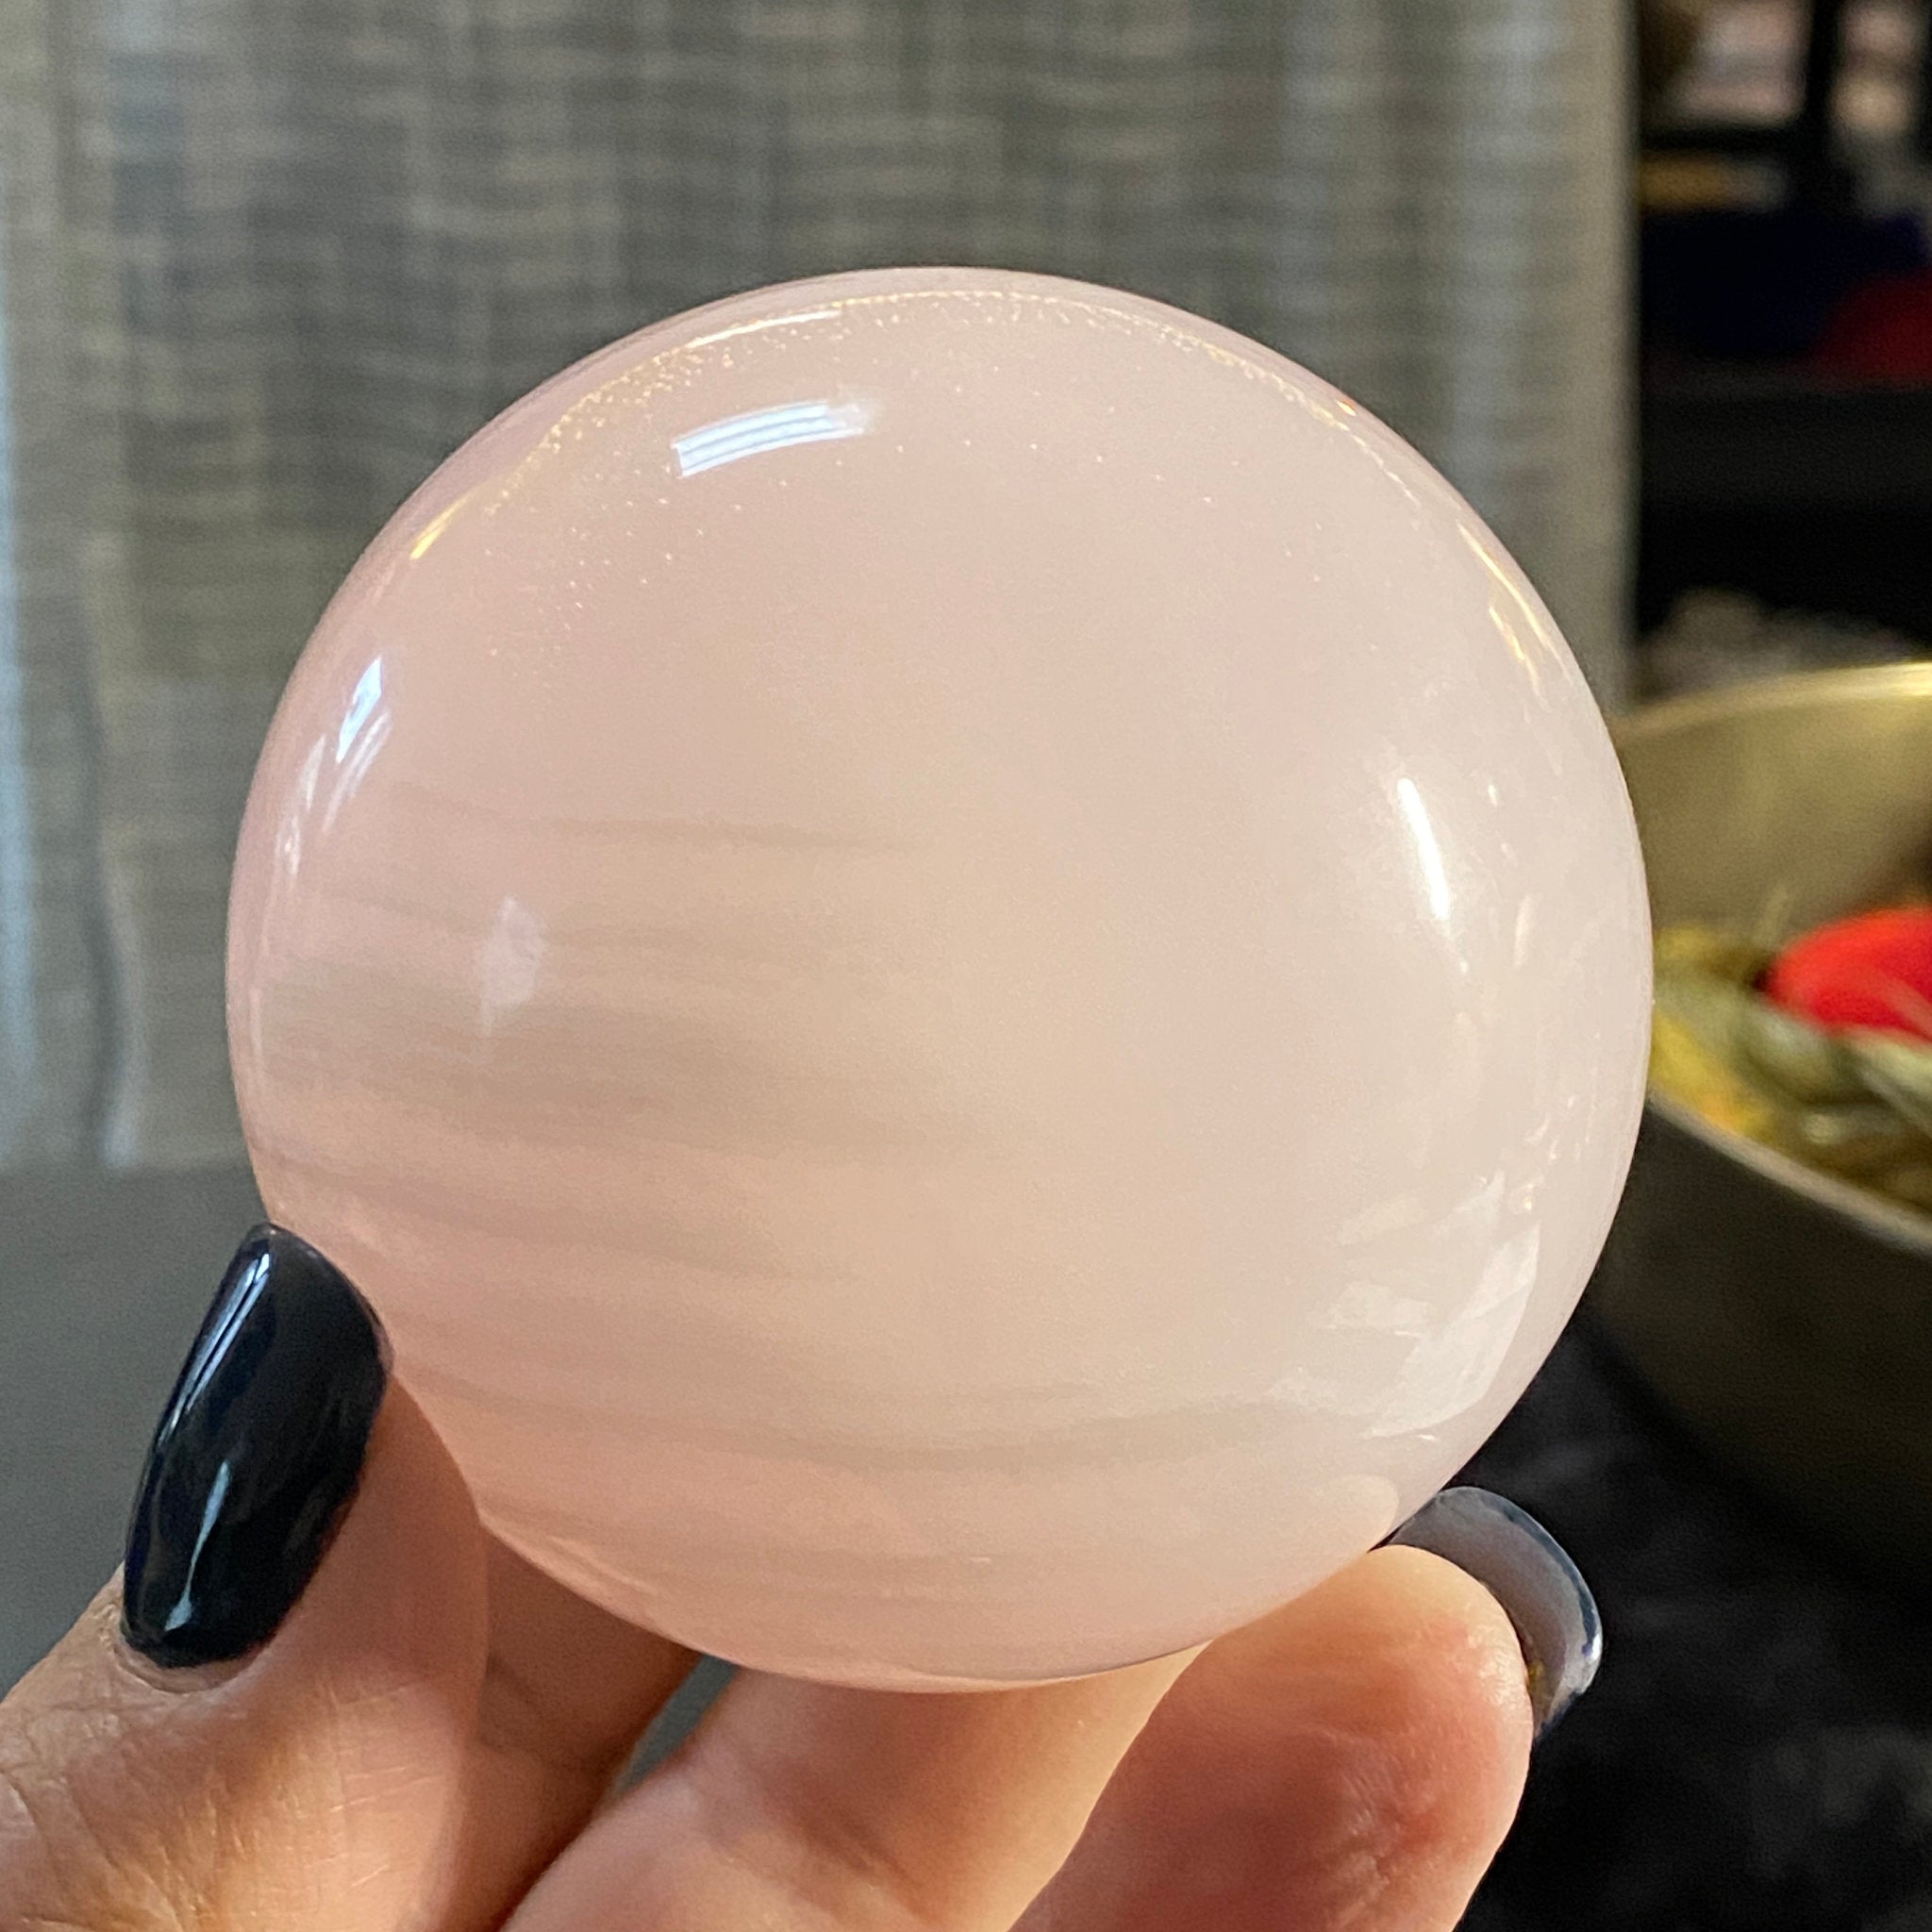 Mangano Calcite Sphere